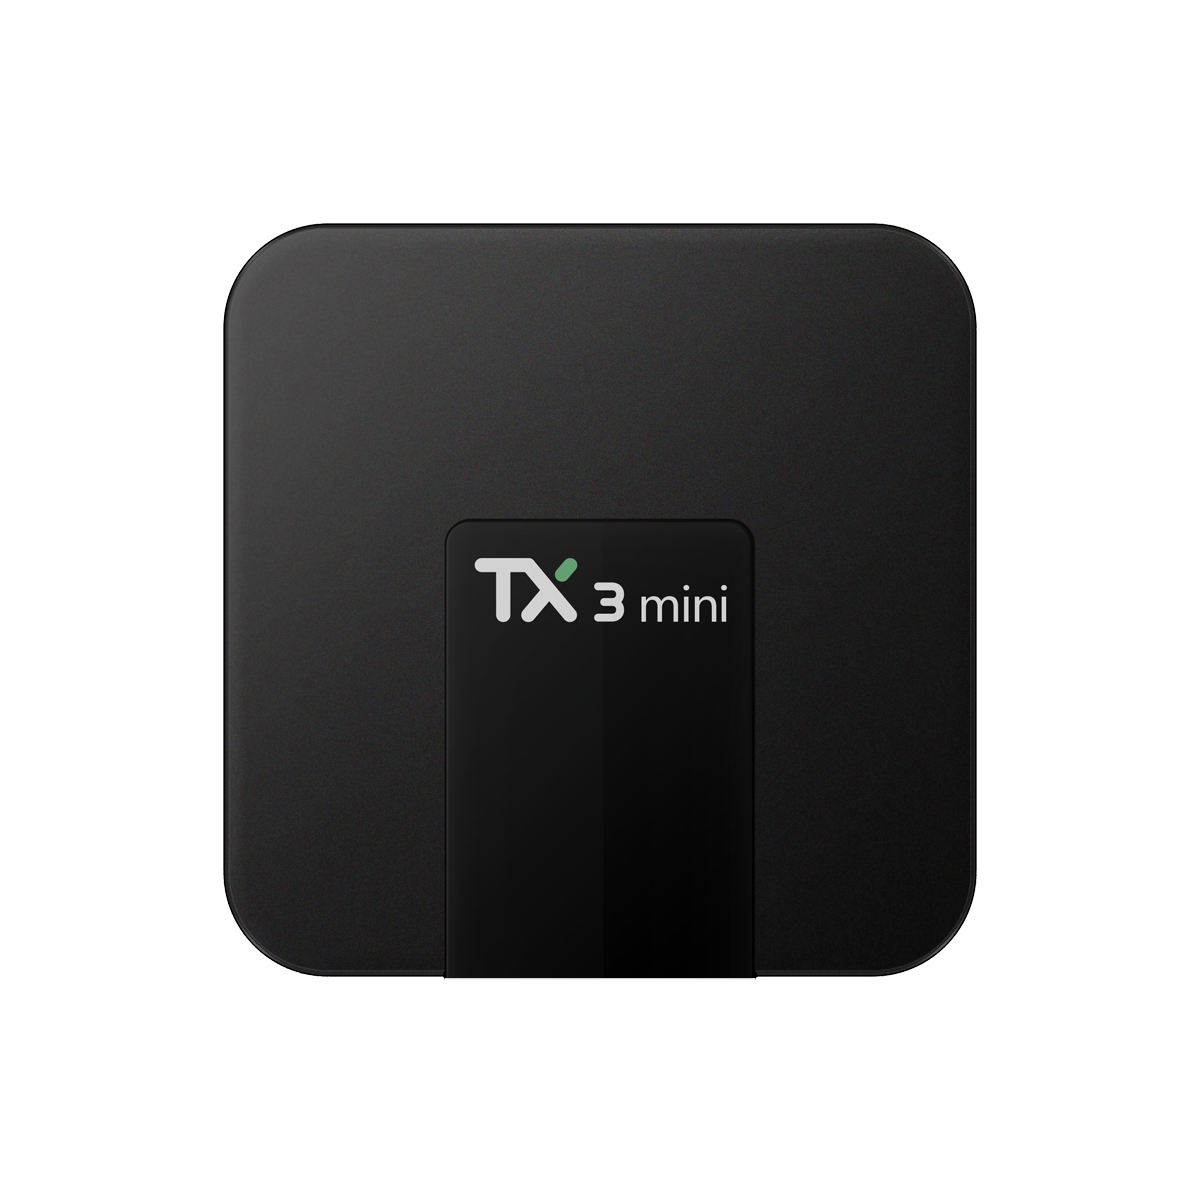 Tanix TX3 Mini S905W 2G/16G Android 7.1 TV Box